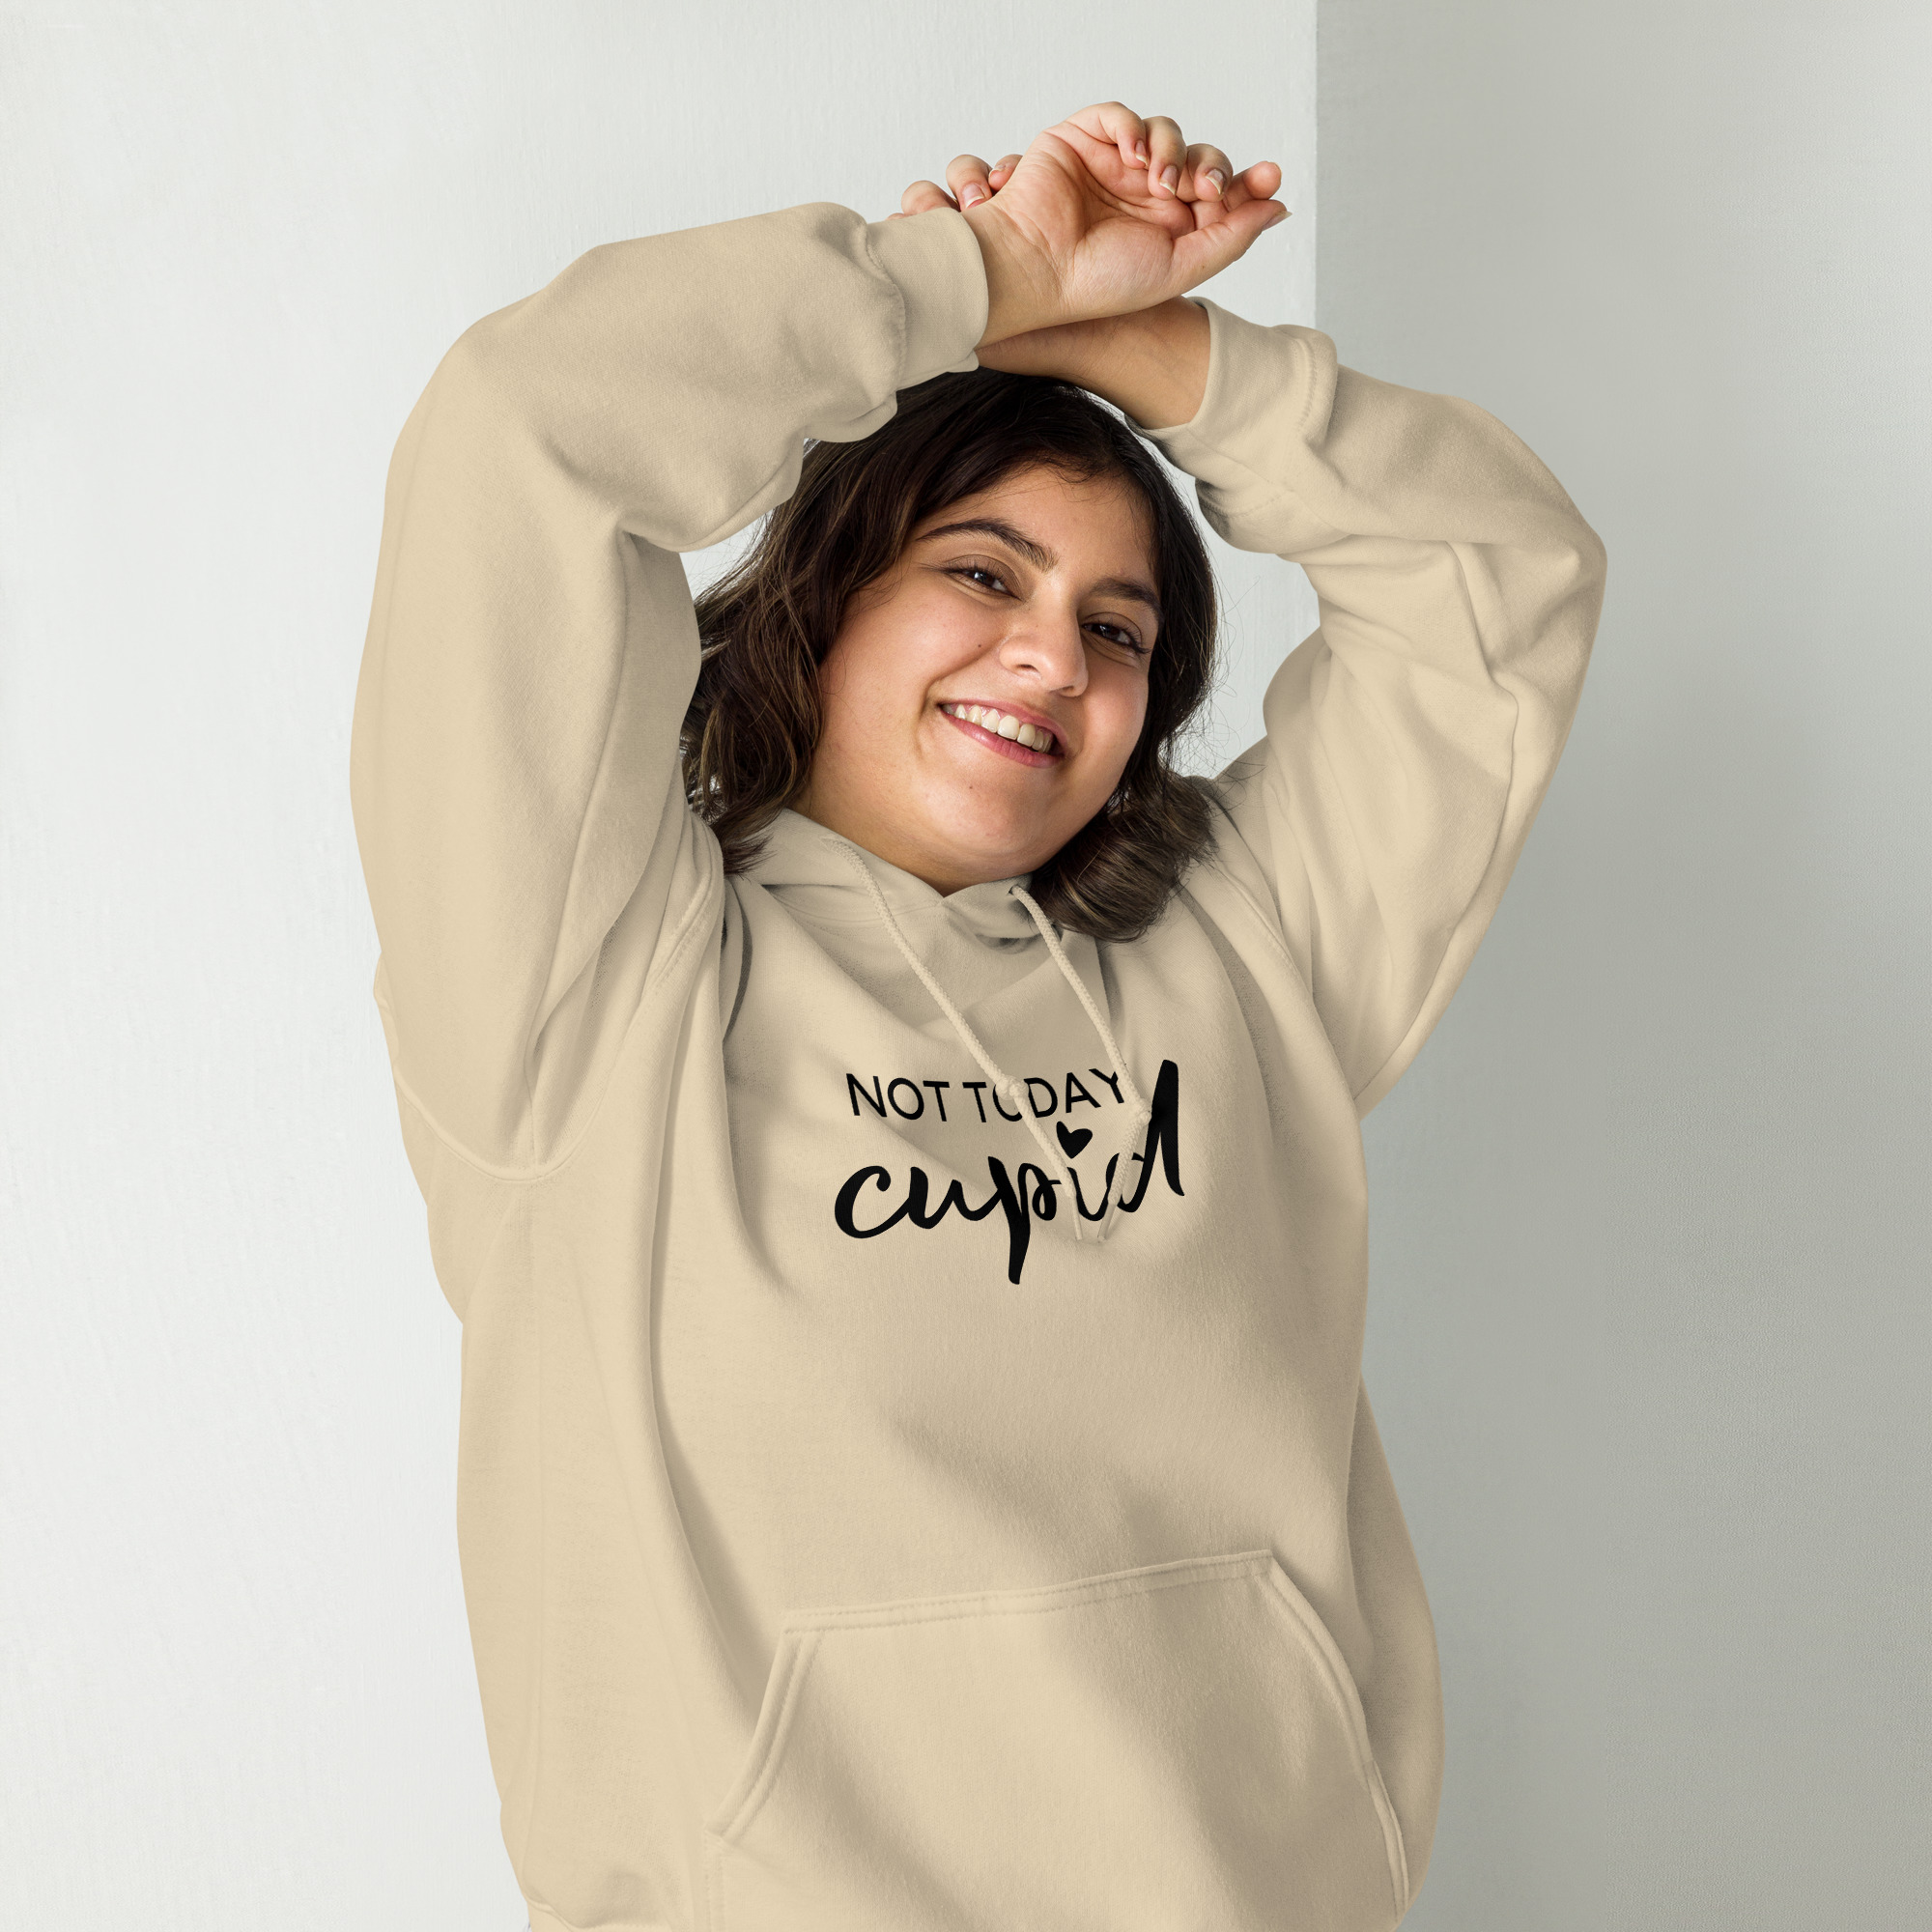 “not today cupid” women’s hoodie